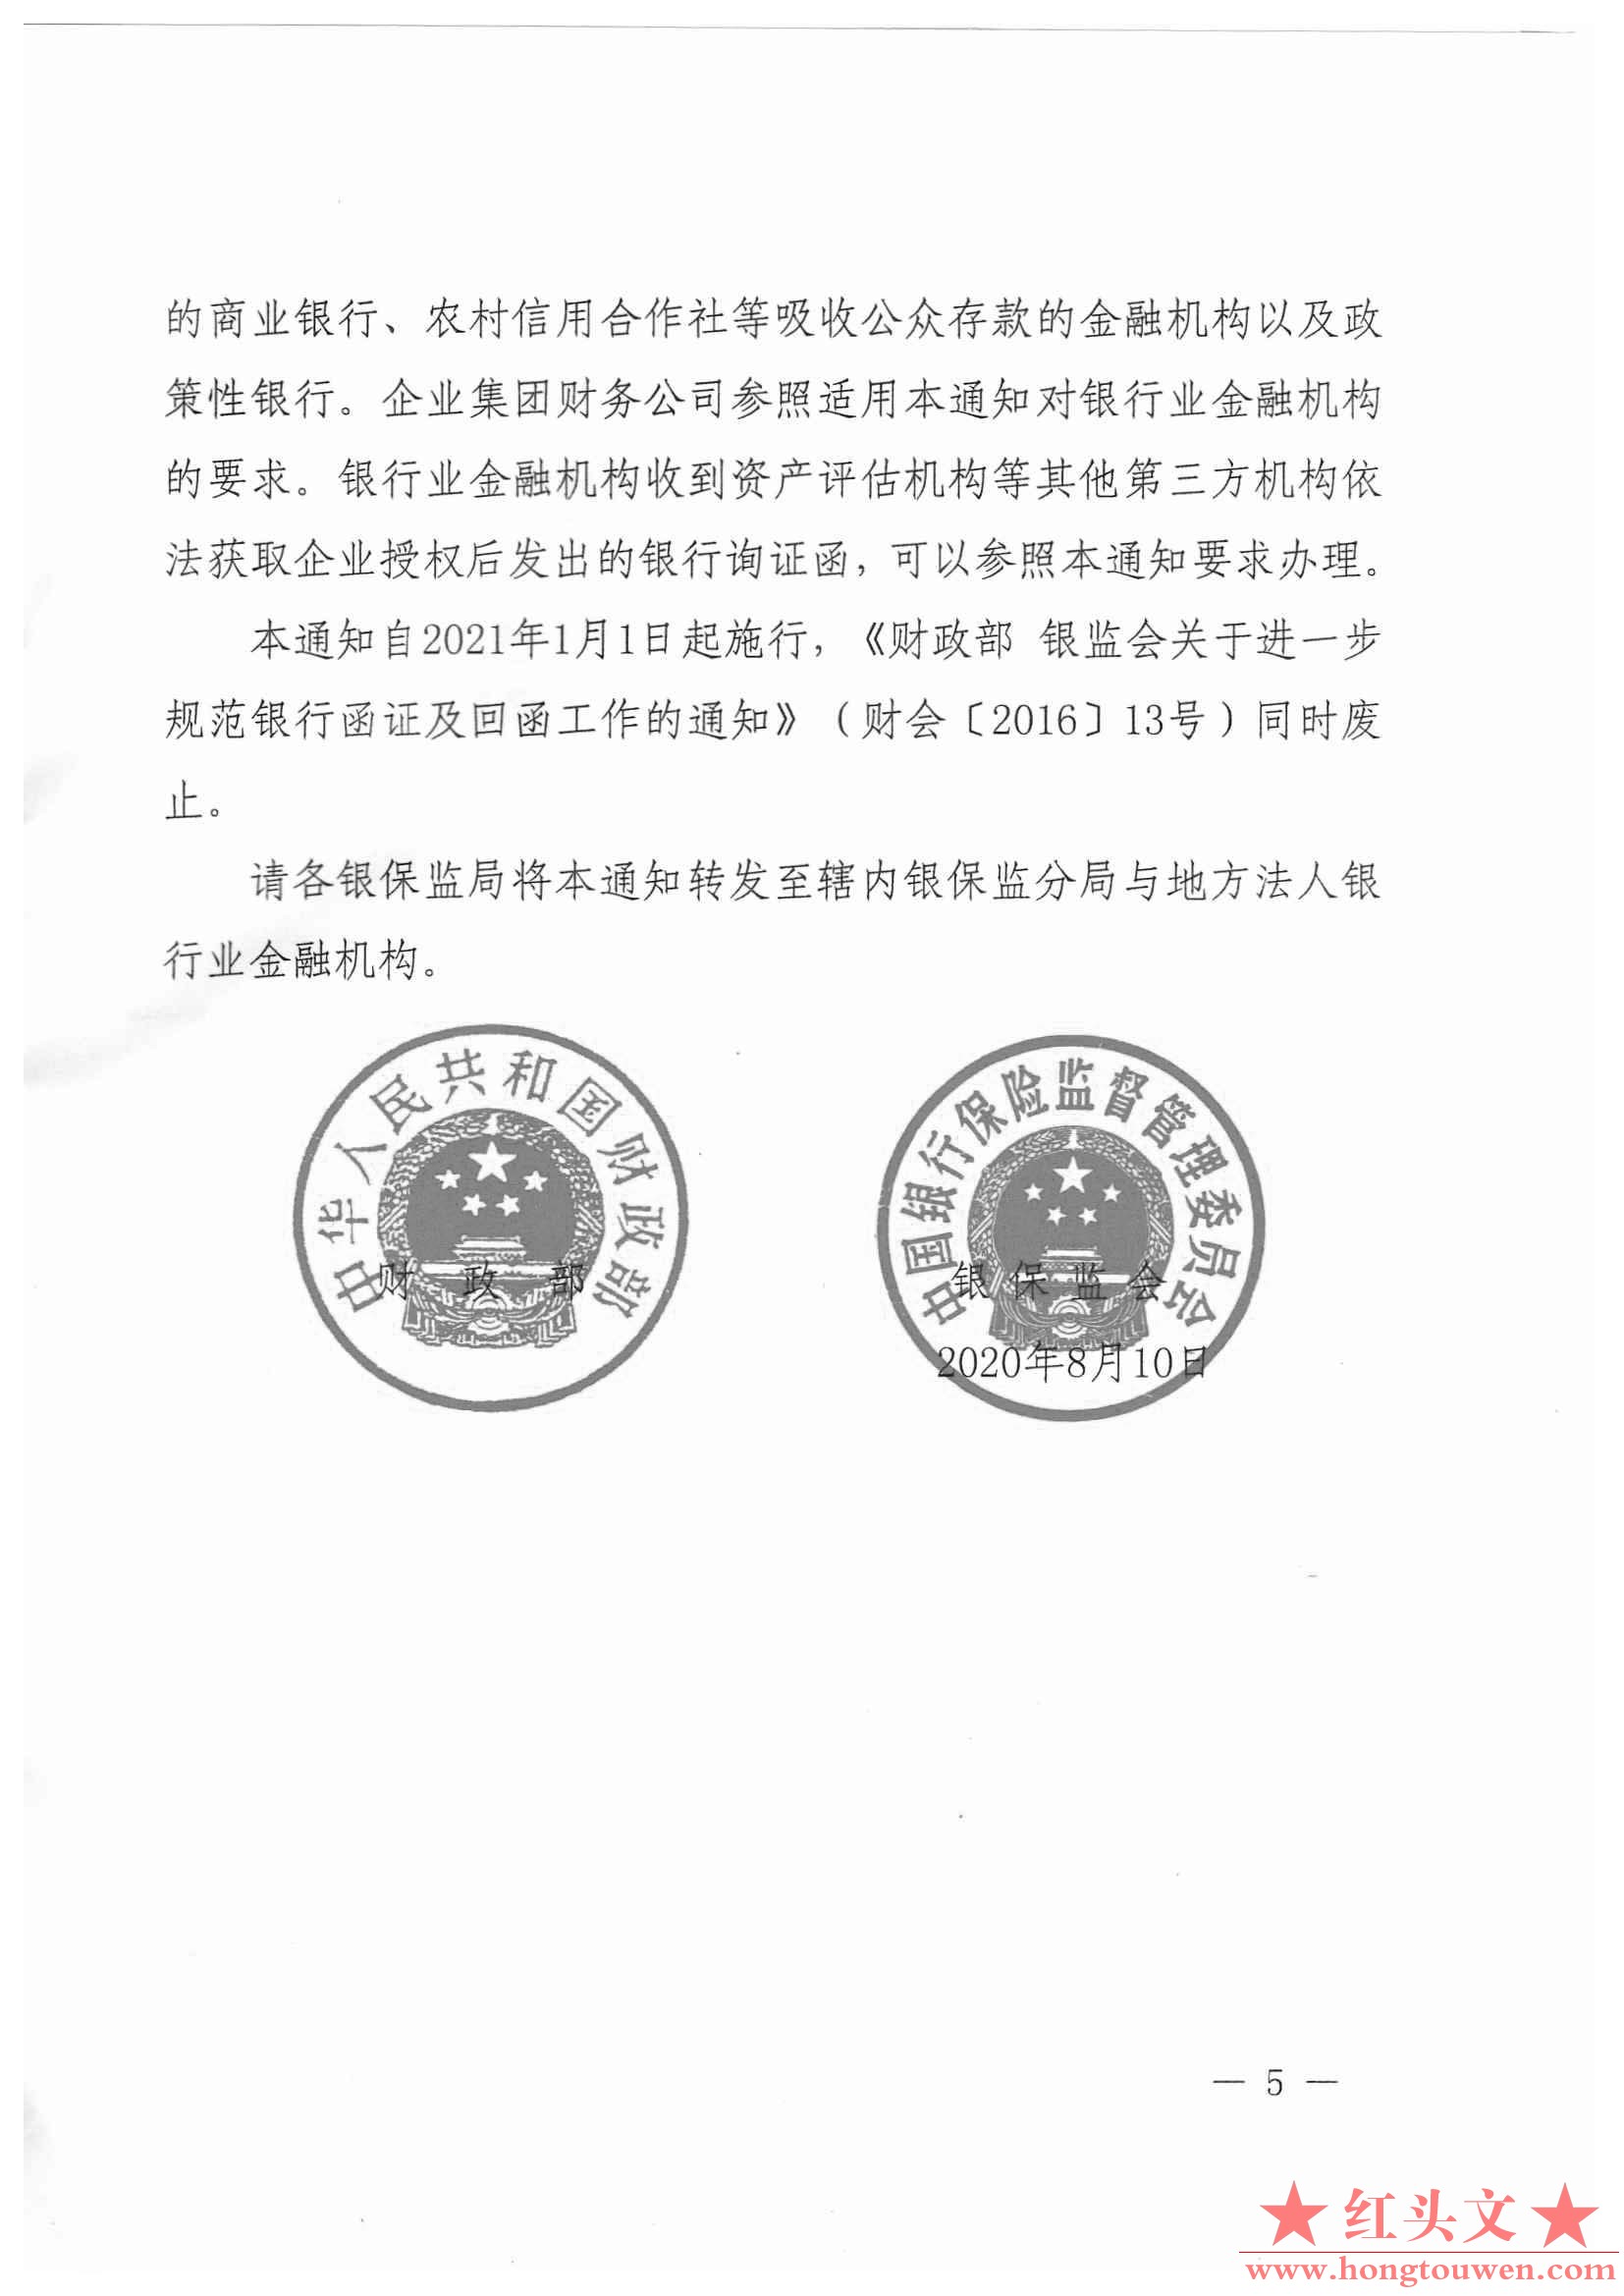 财会[2020]12号-财政部 中国银保监会关于进一步规范银行函证及回函工作的通知_页面_5.jpg